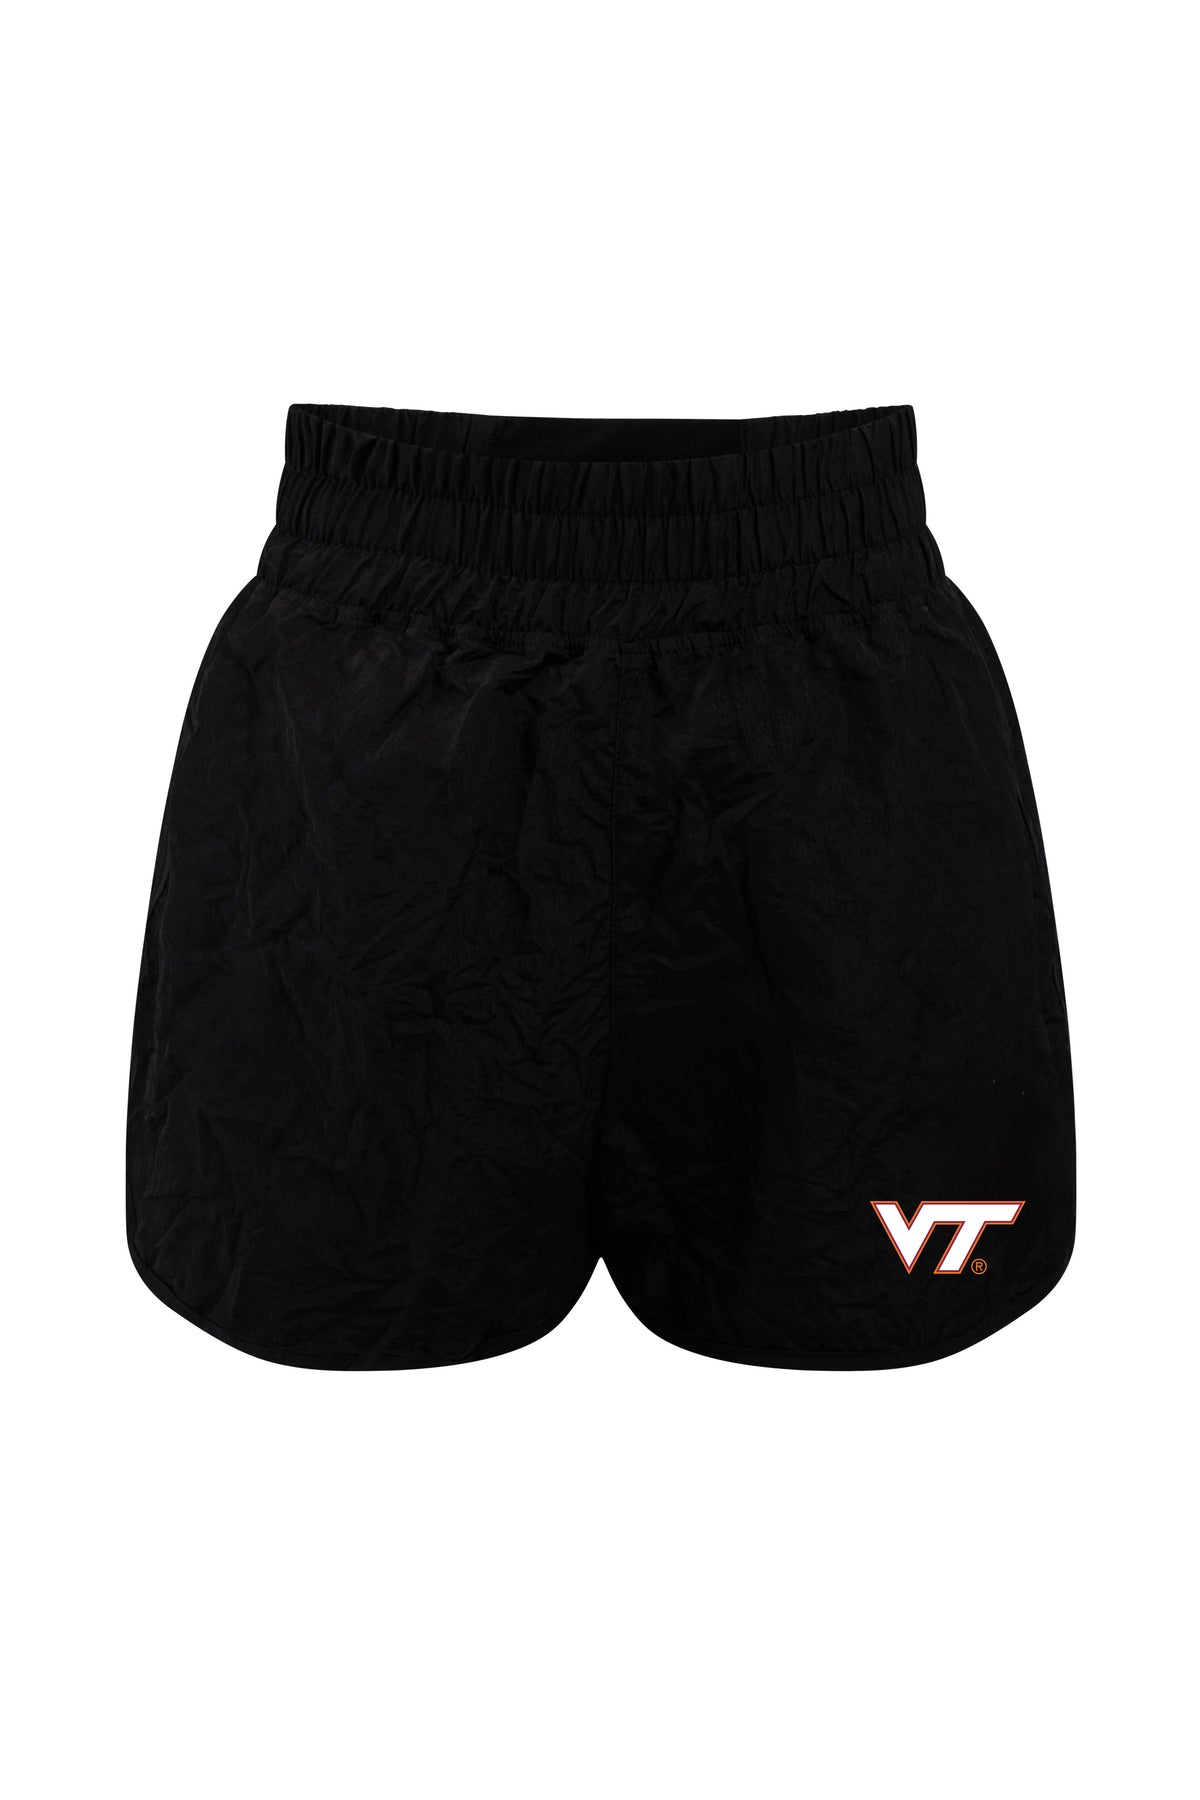 University Virginia Tech Boxer Short